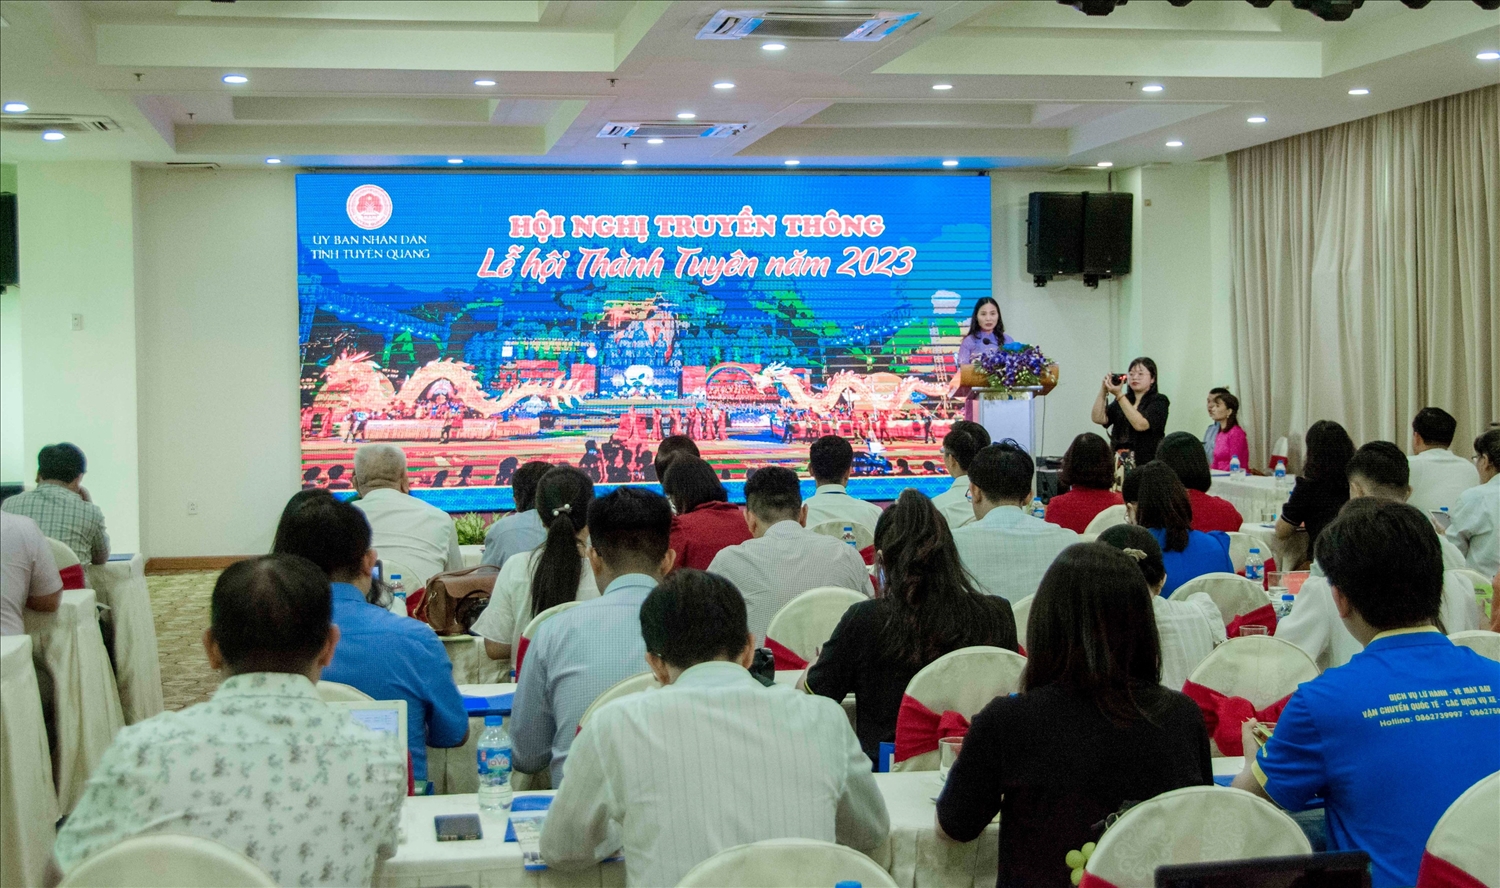 Quang cảnh hội nghị truyền thông lễ hội Thành Tuyên năm 2023 tại TP Cần Thơ.